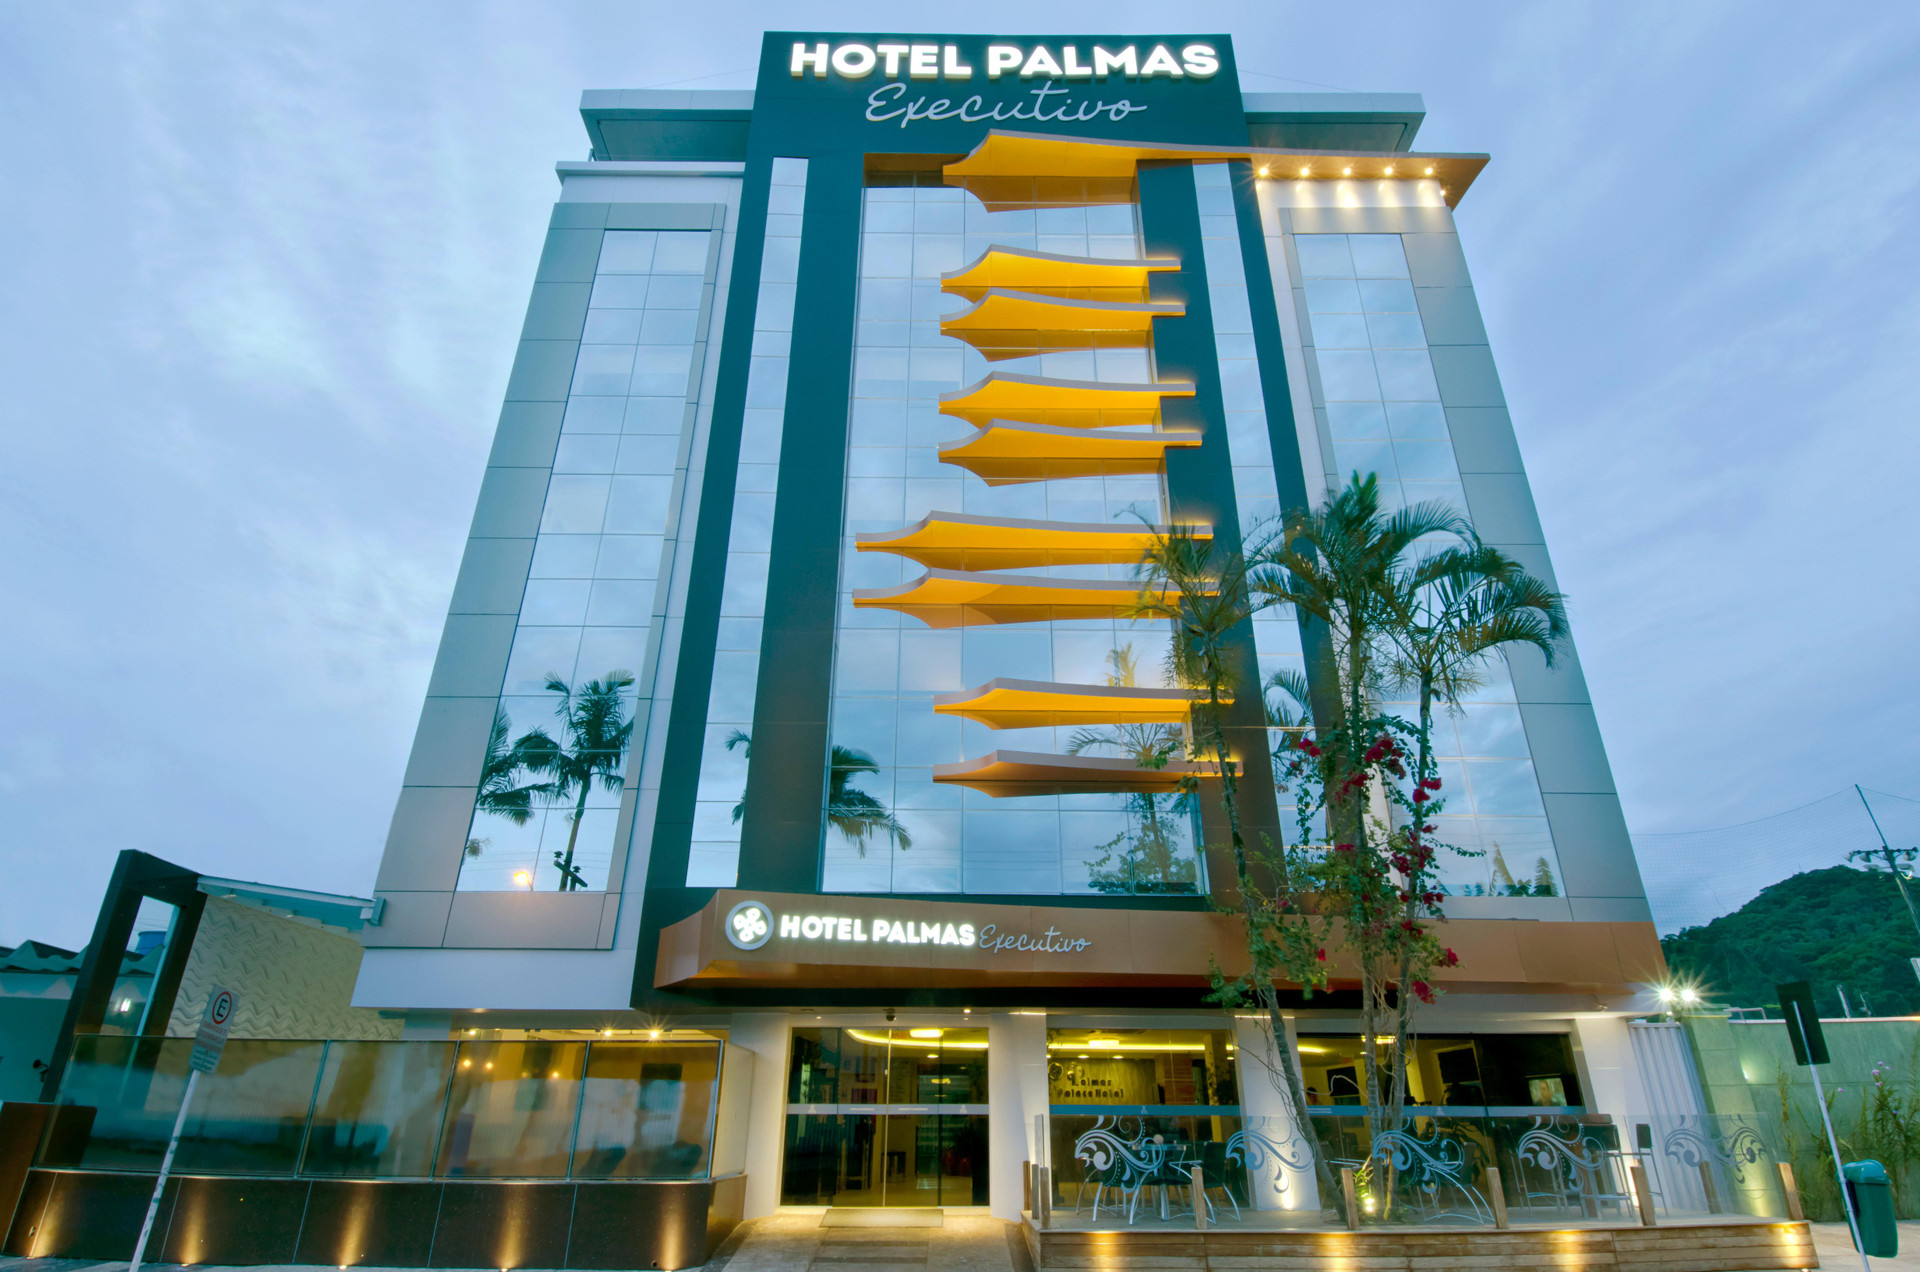 Variados (as) Hotel Palmas Executivo